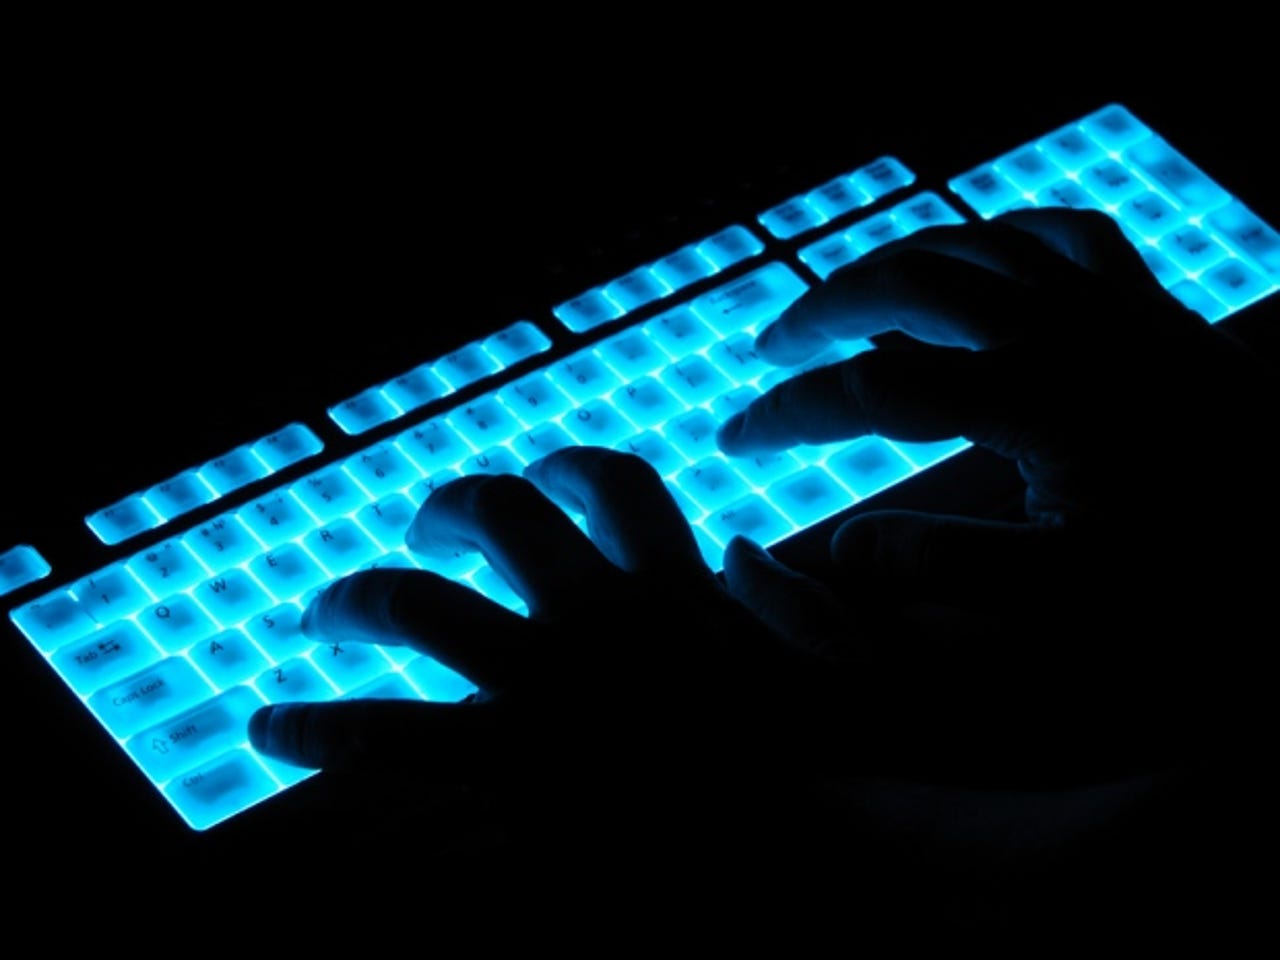 glowing-keyboard-hacker-security